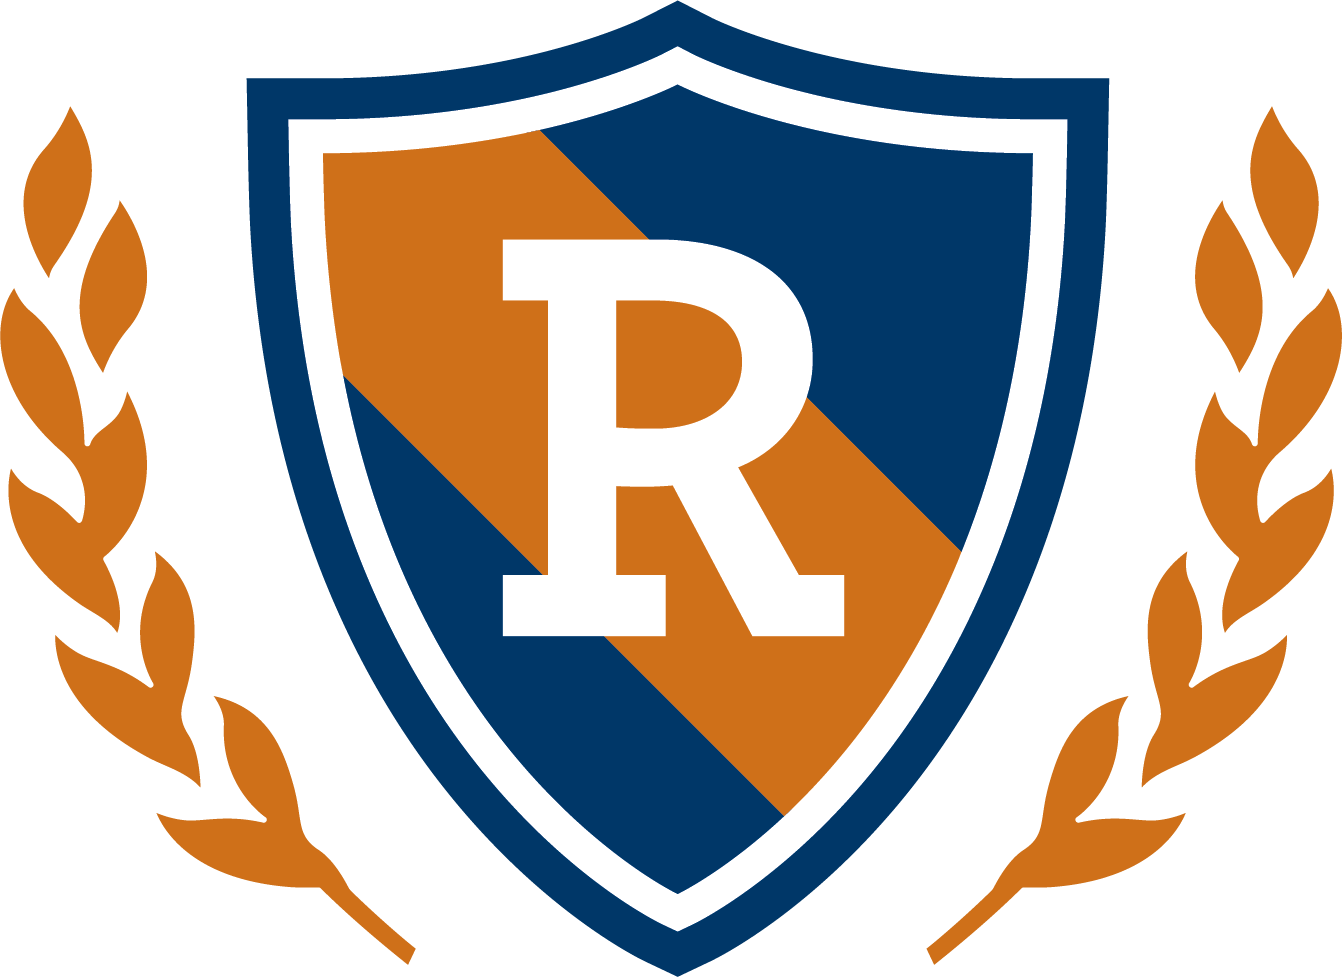 The Rhoades School logo